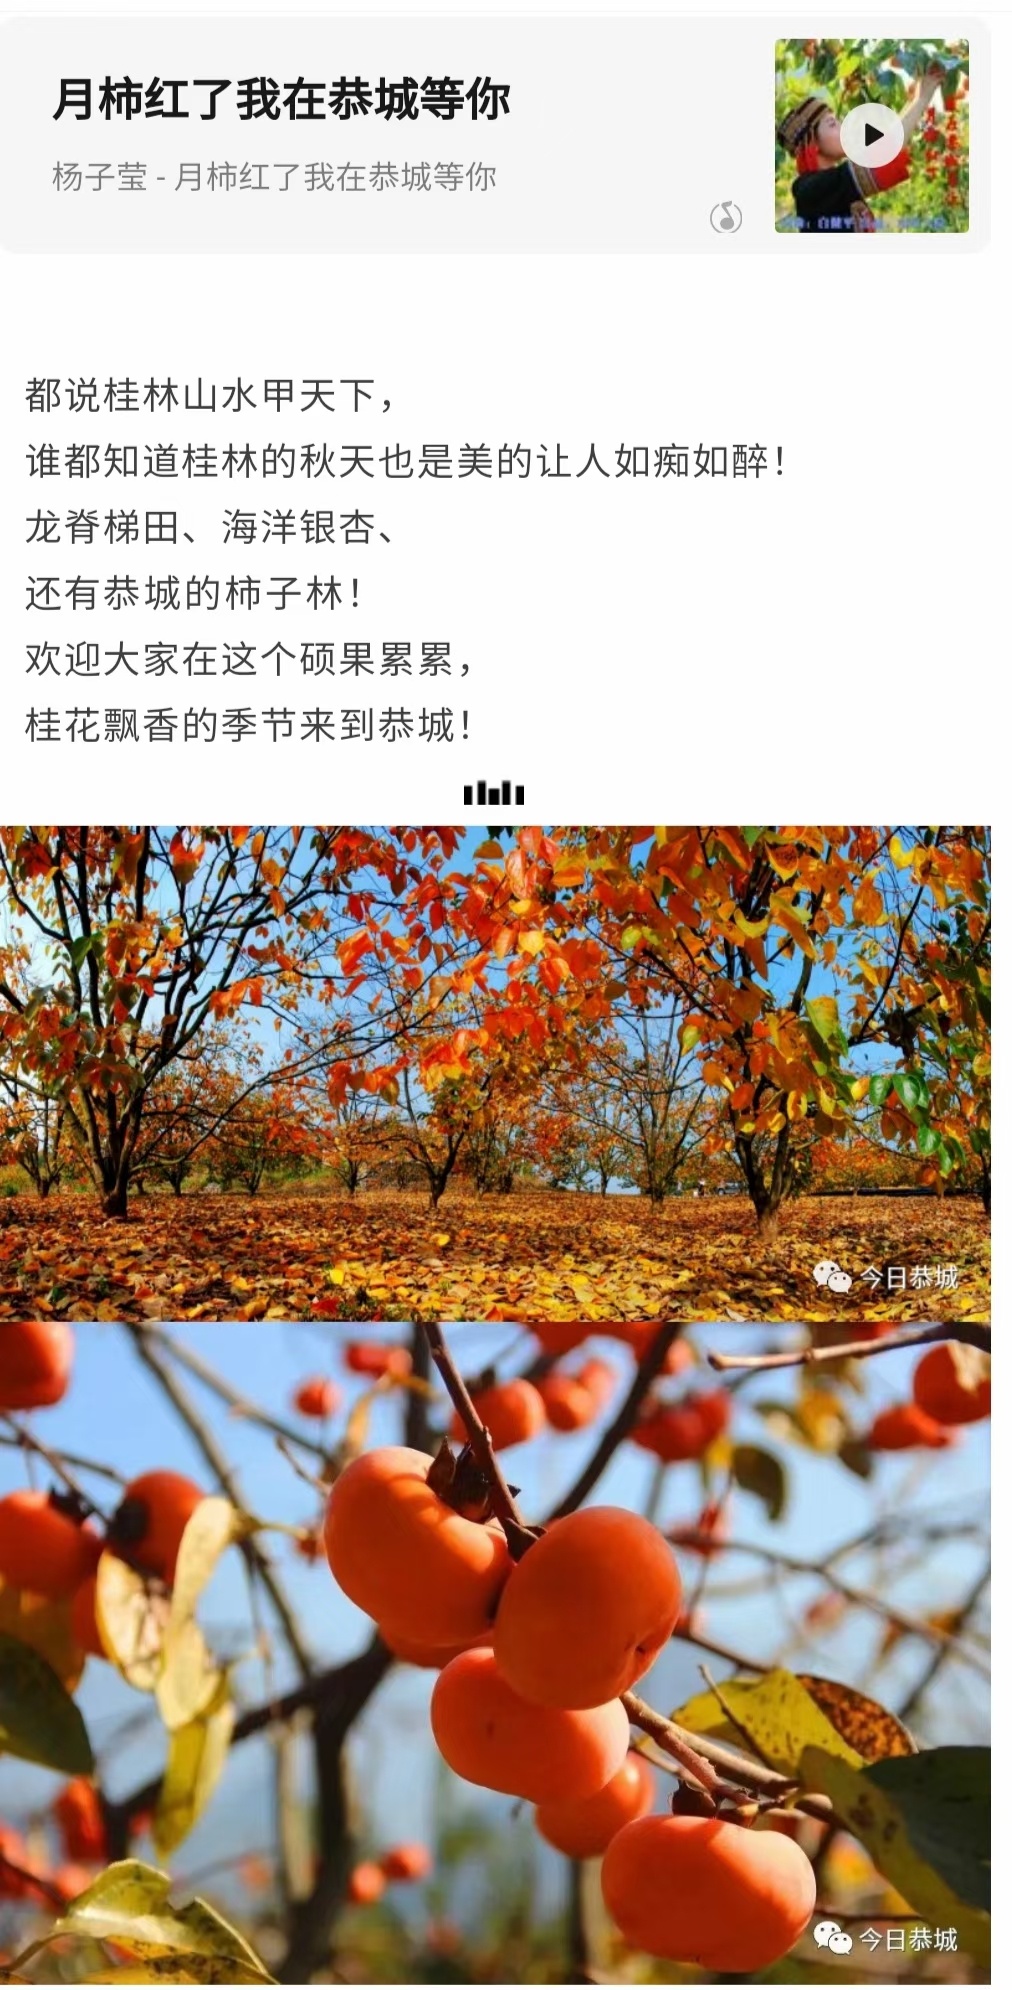 家乡的柿子红了673 / 作者:陈宏福 / 帖子ID:300201